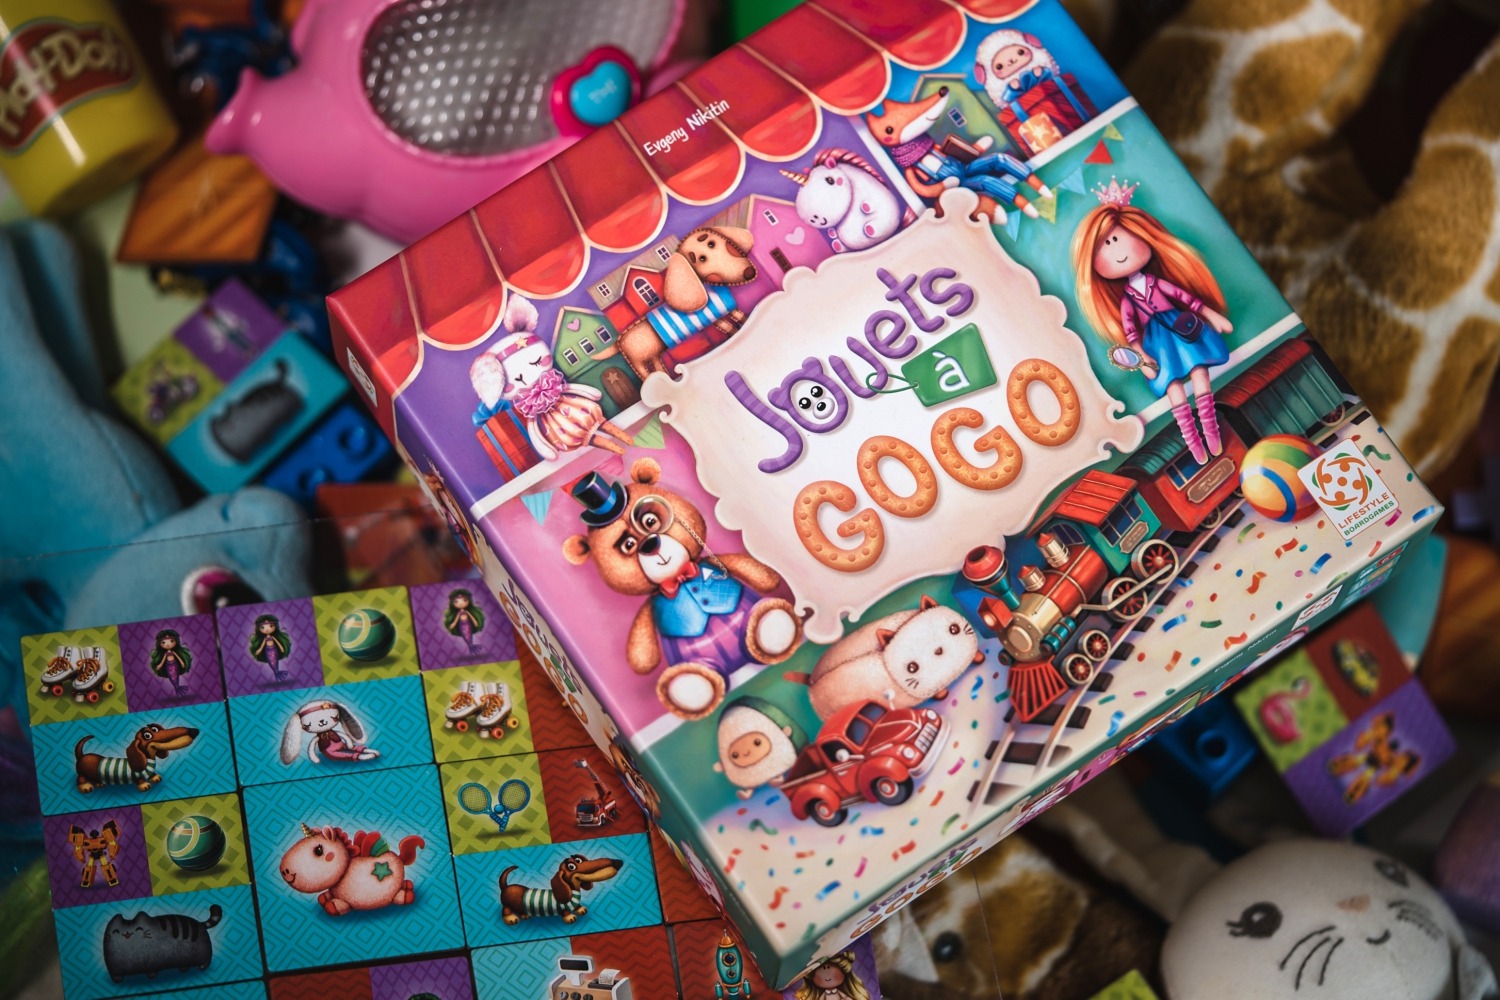 jouets à gogo Lifestyle Boardgames Ltd